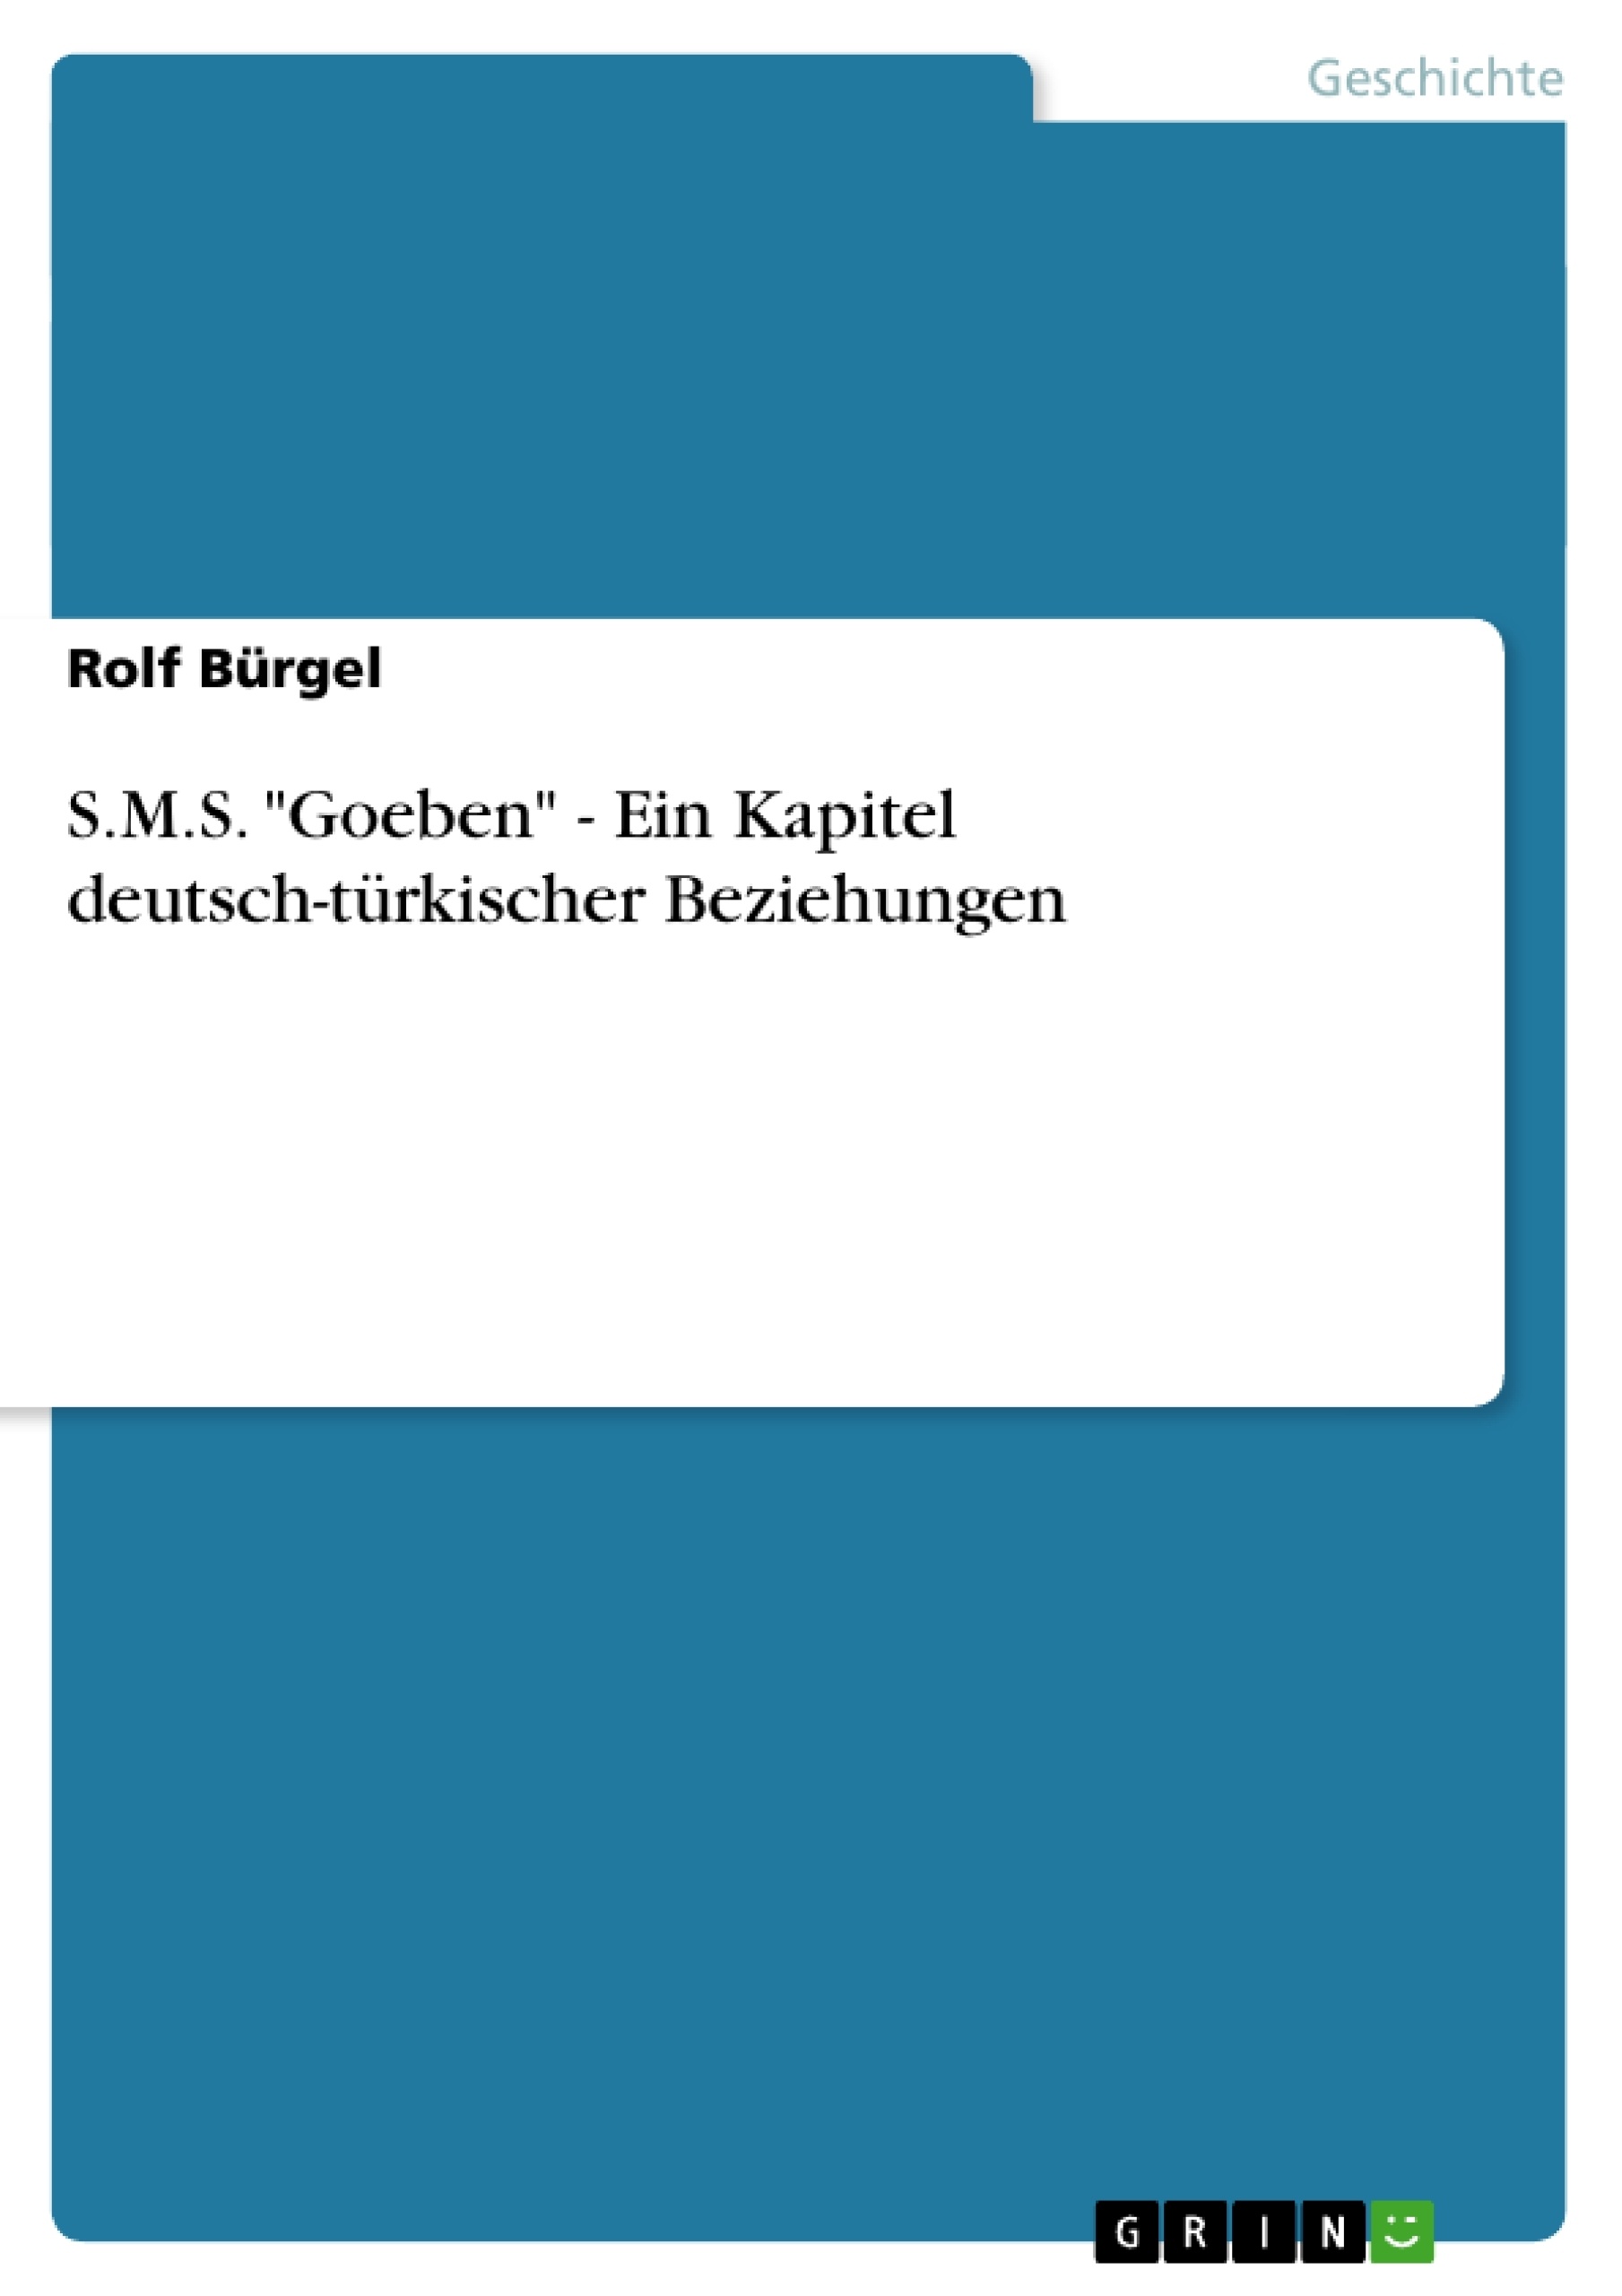 Título: S.M.S. "Goeben" - Ein Kapitel deutsch-türkischer Beziehungen